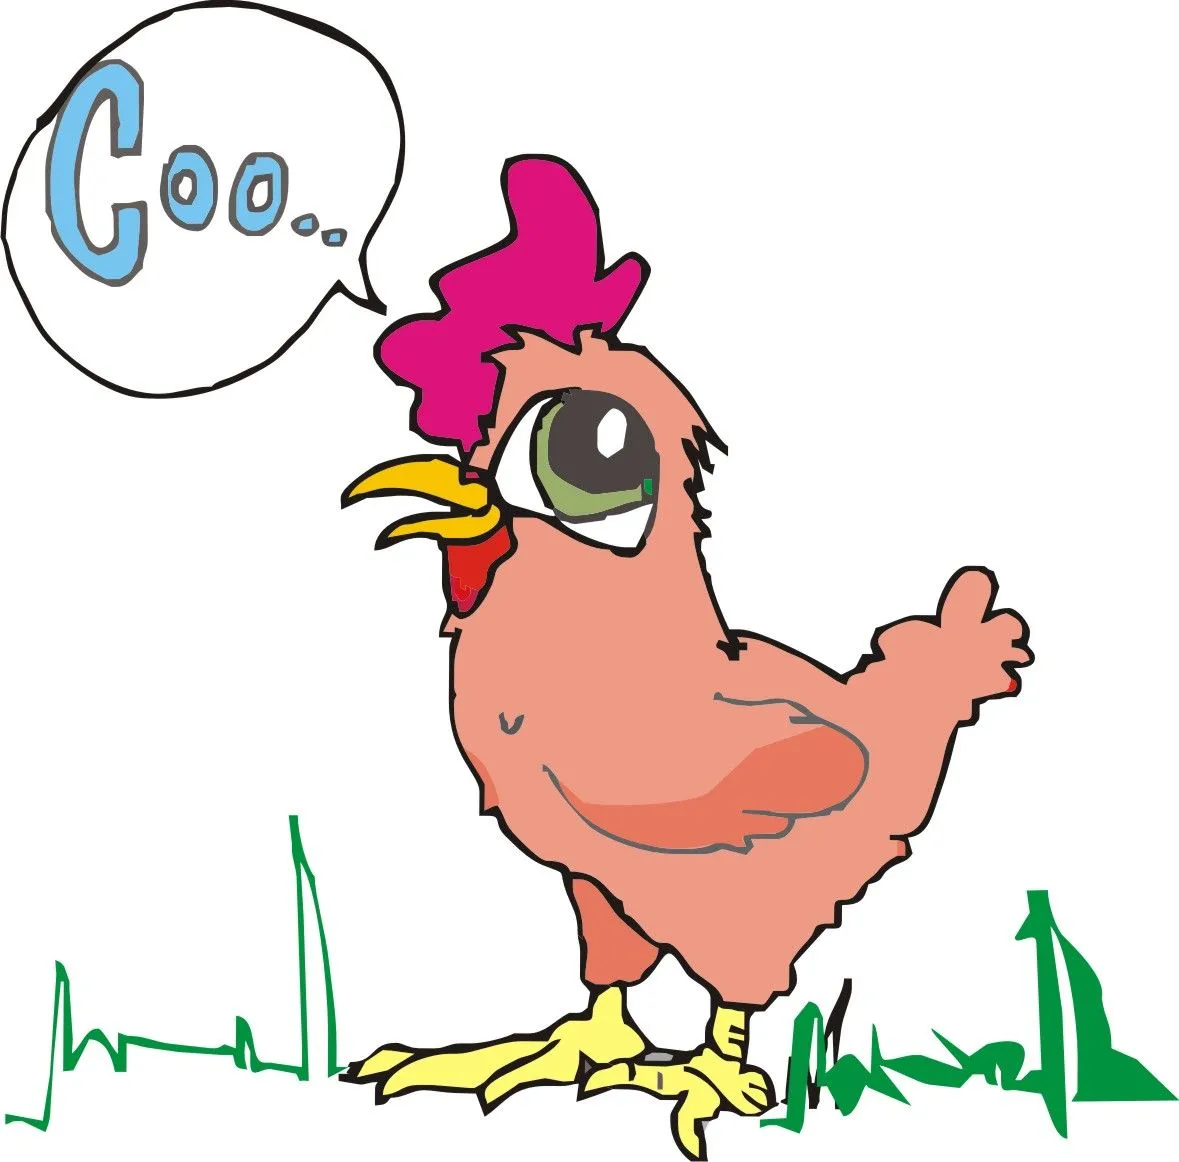 La gallina en caricatura - Imagui